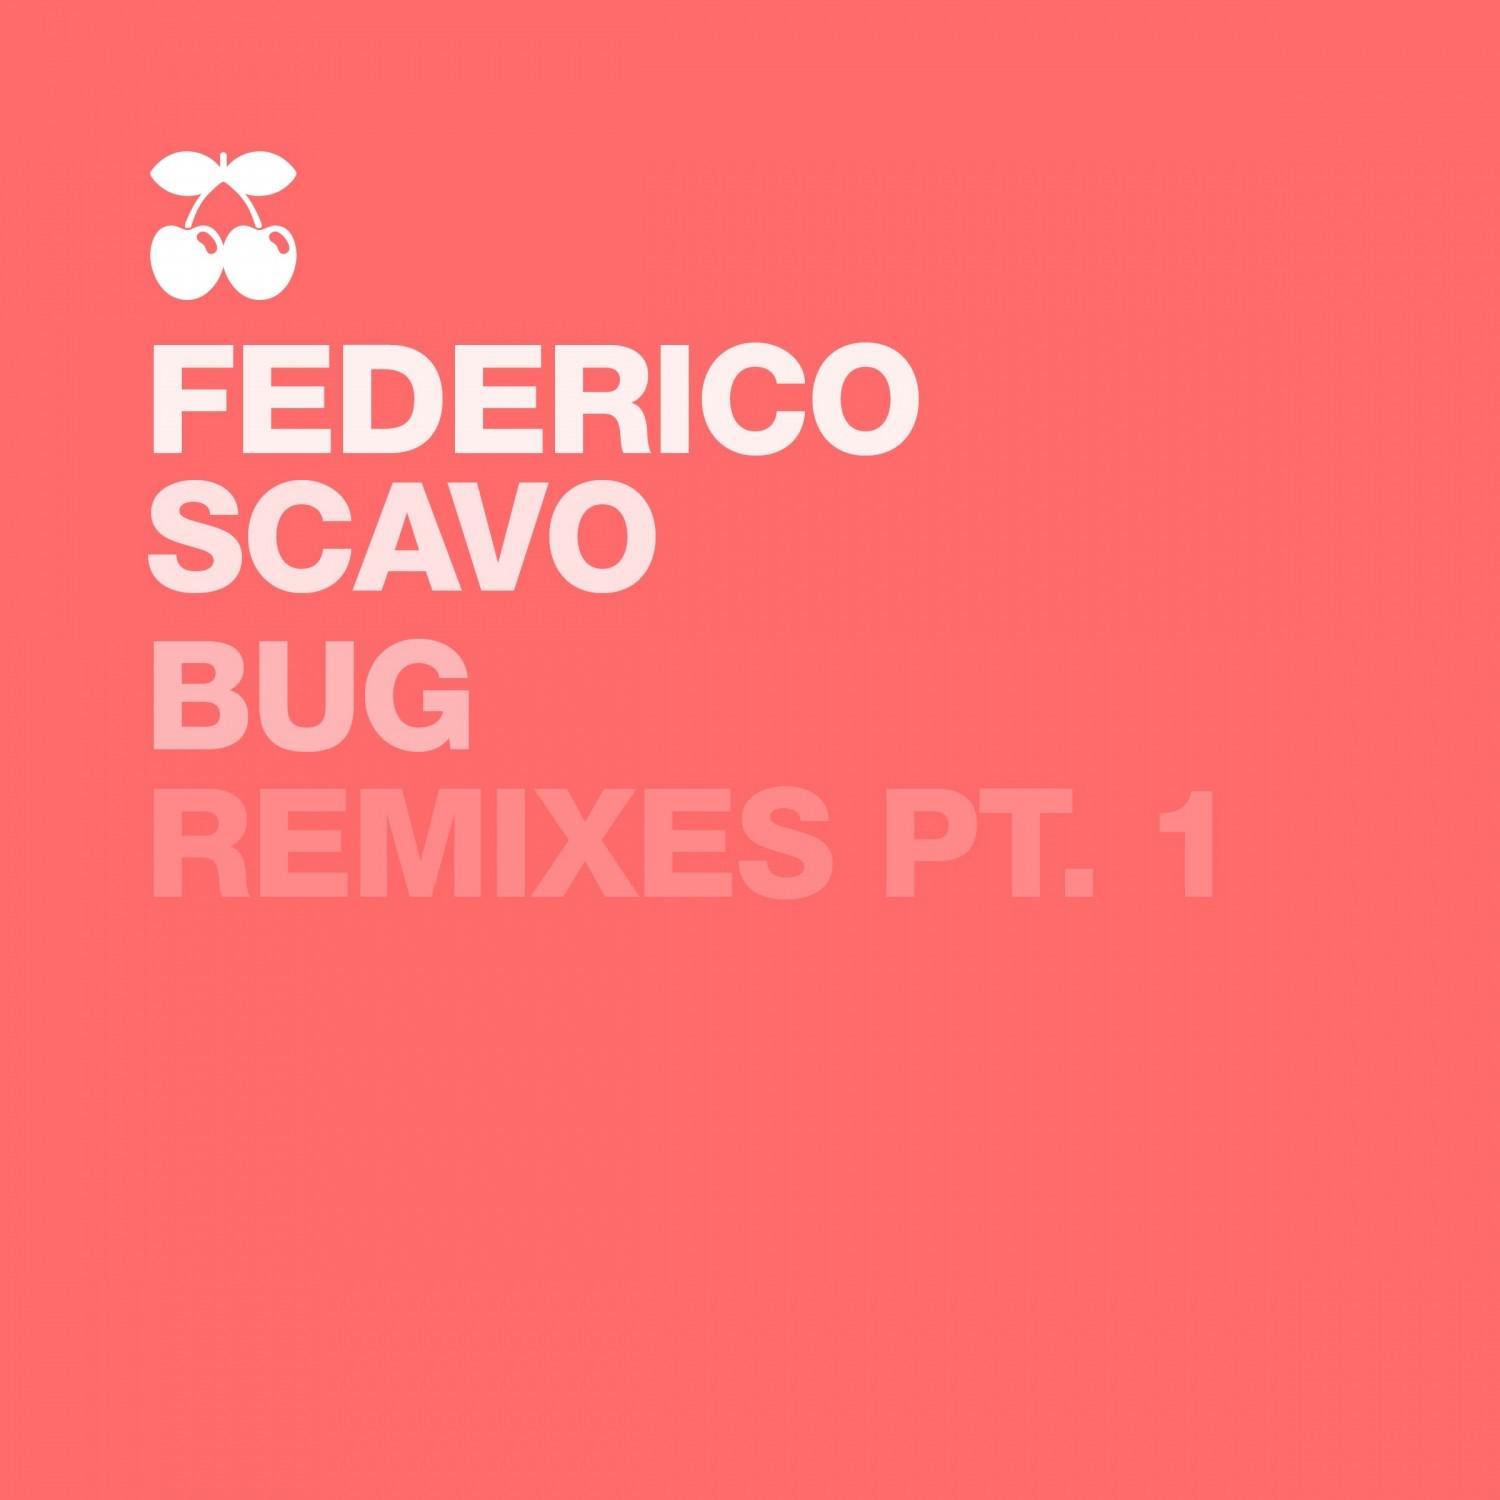 Bug - Remixes, Pt. 1